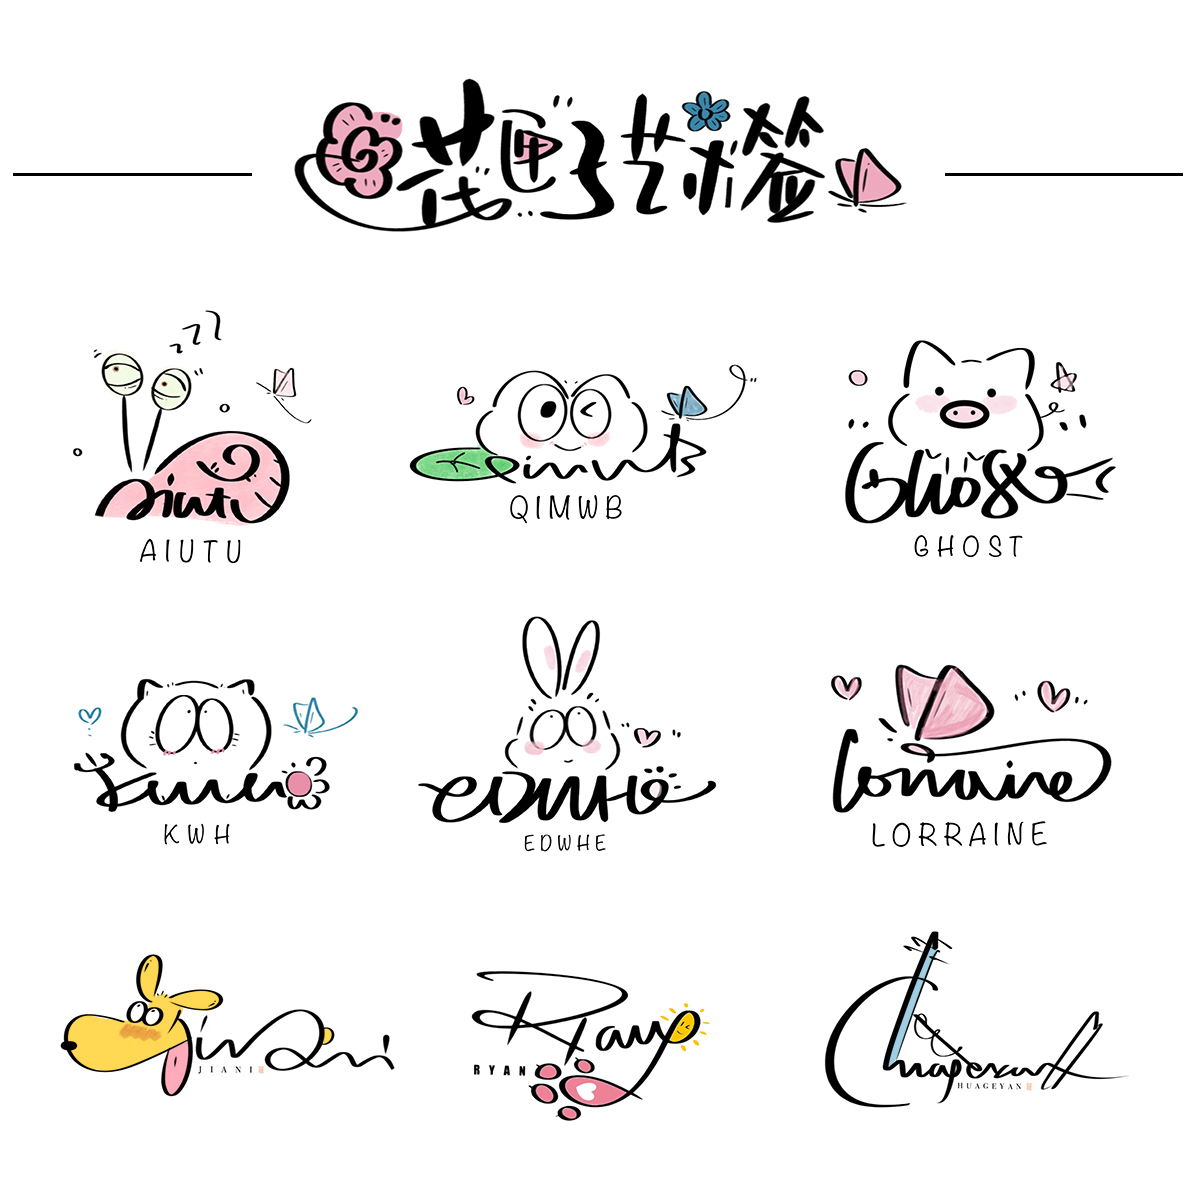 原创设计艺术签名英文字体卡通手写中文彩色可爱水印头像logo